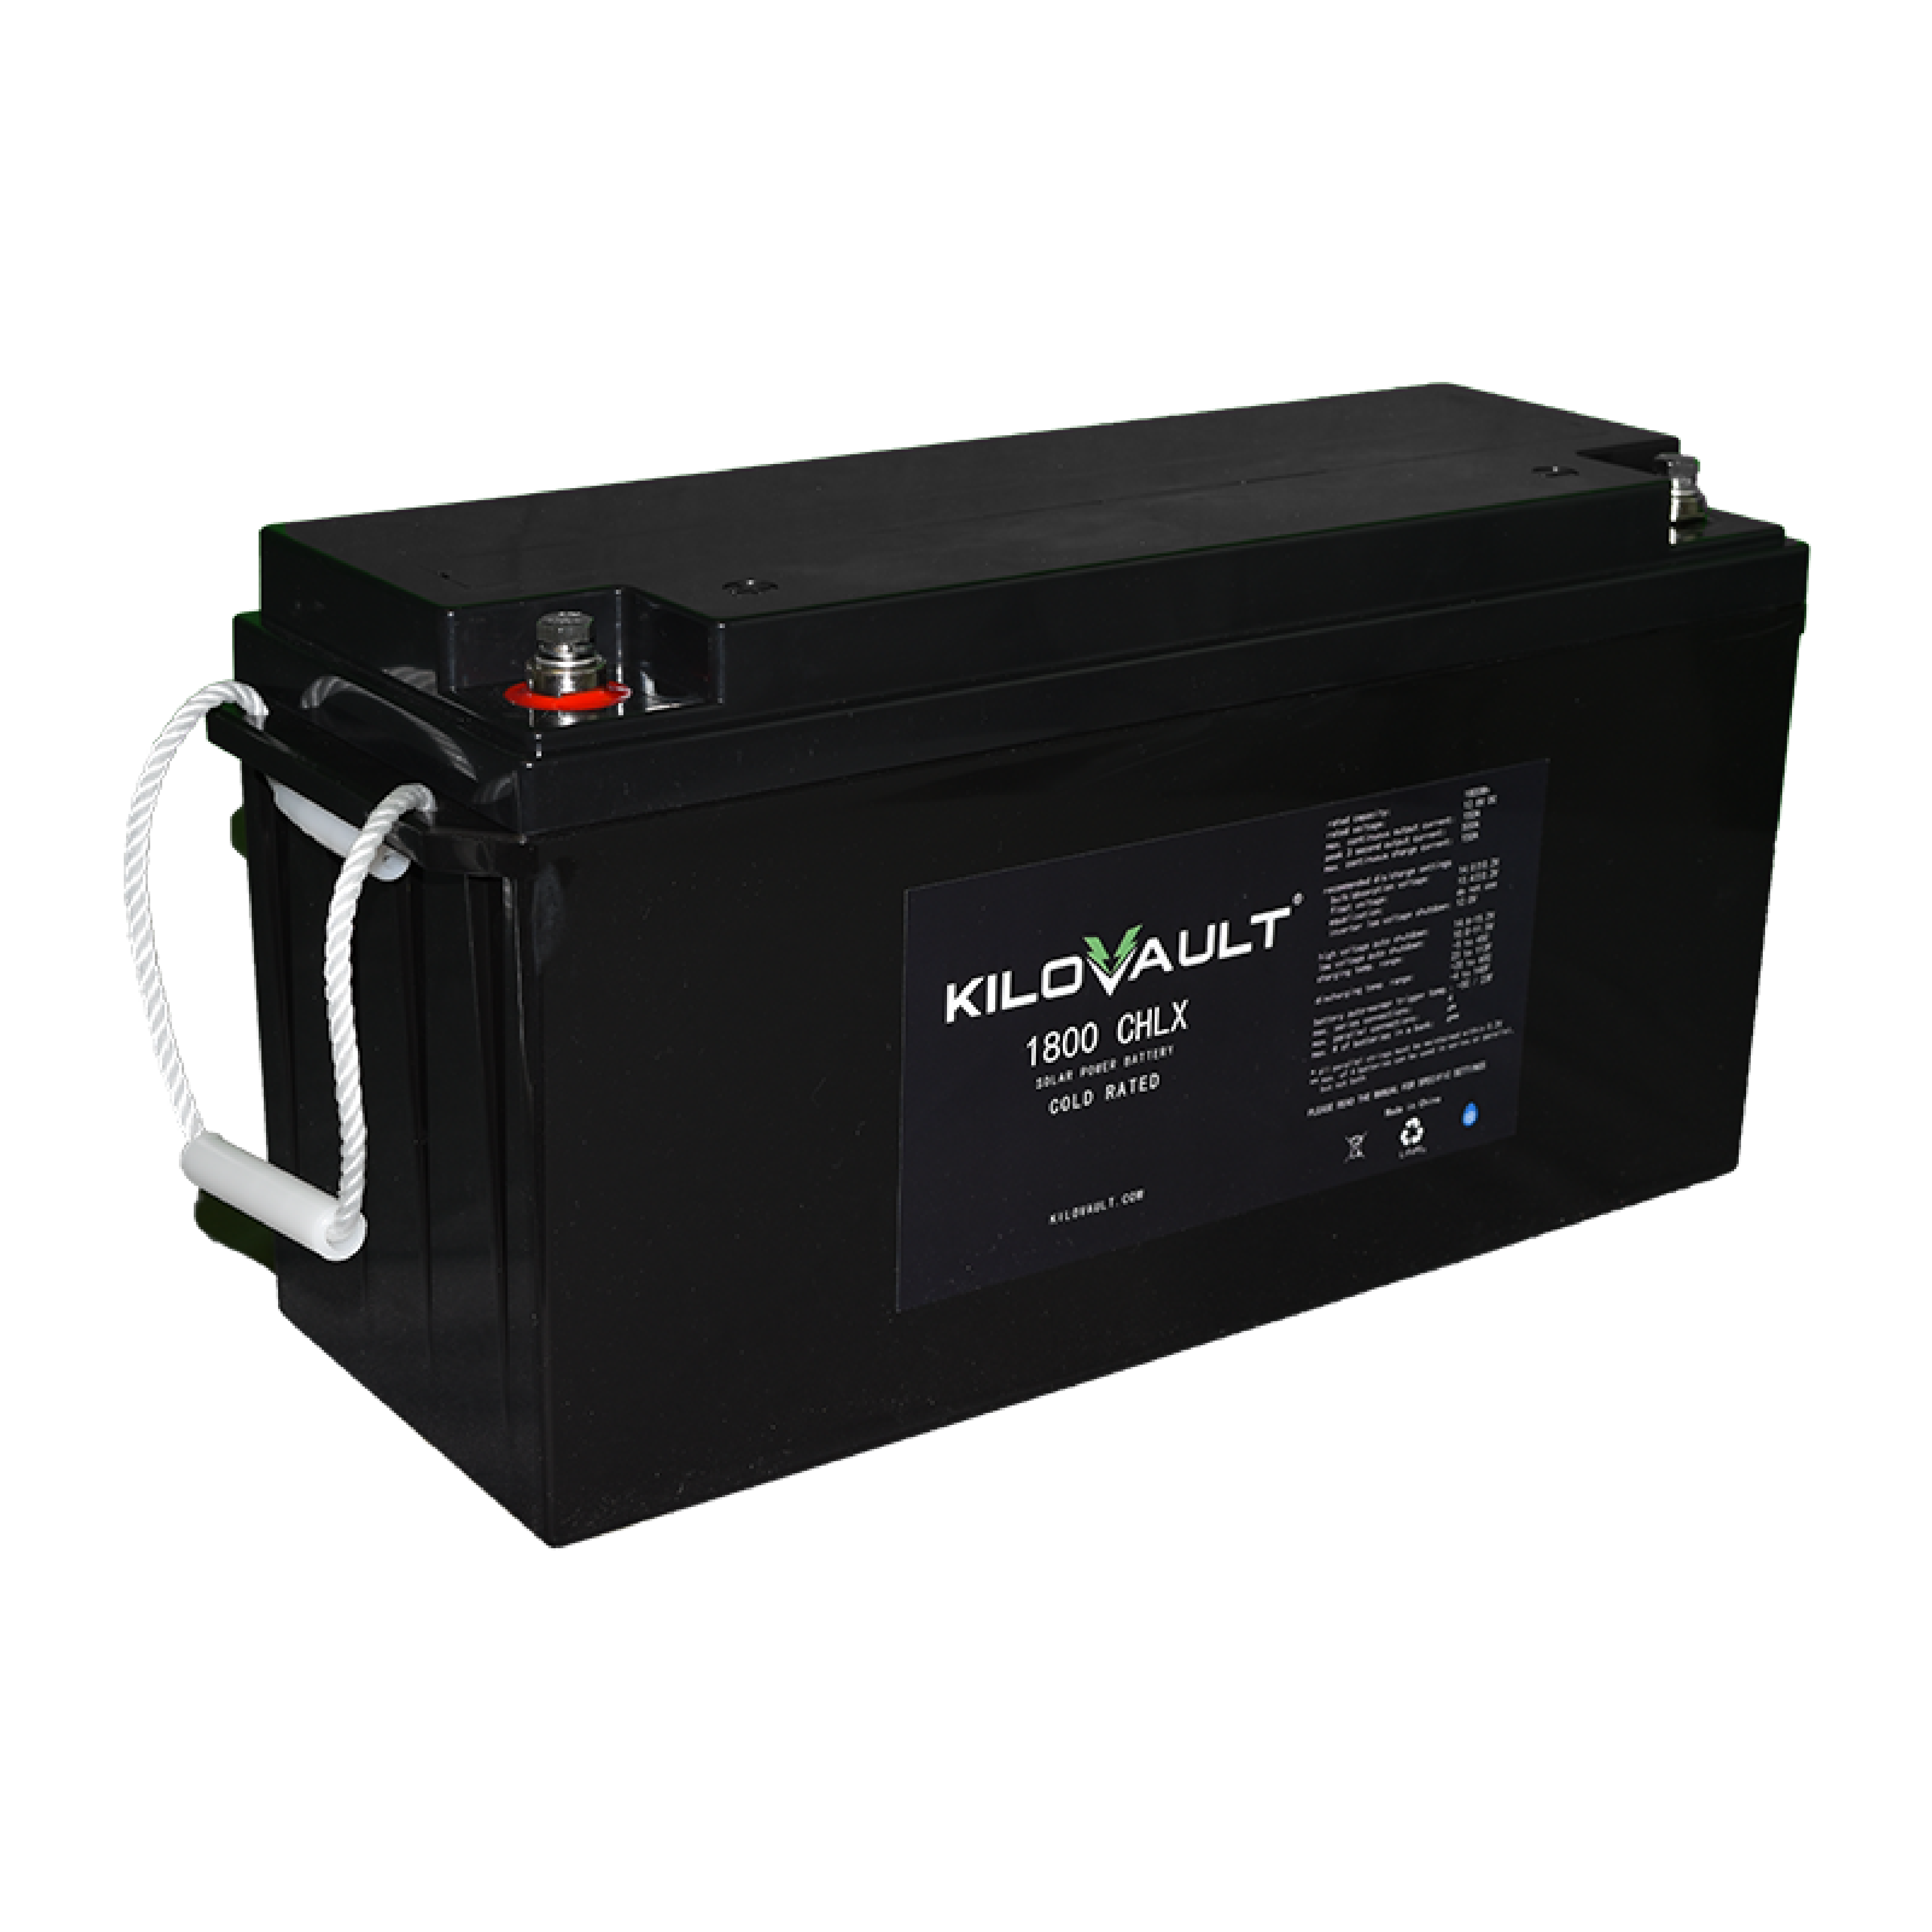 KiloVault CHLX 1800 Battery